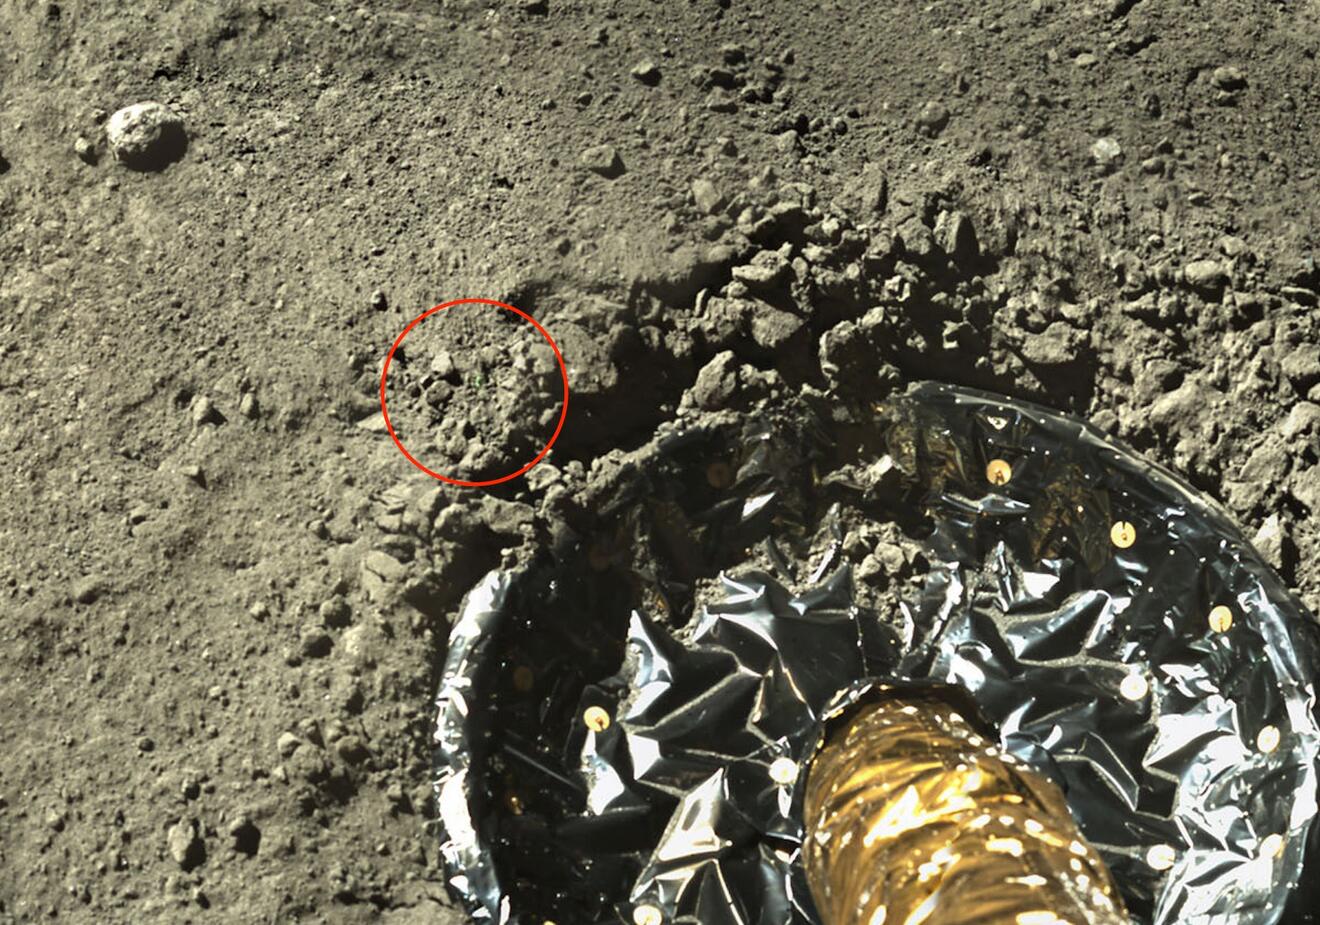 月球土壤照片图片